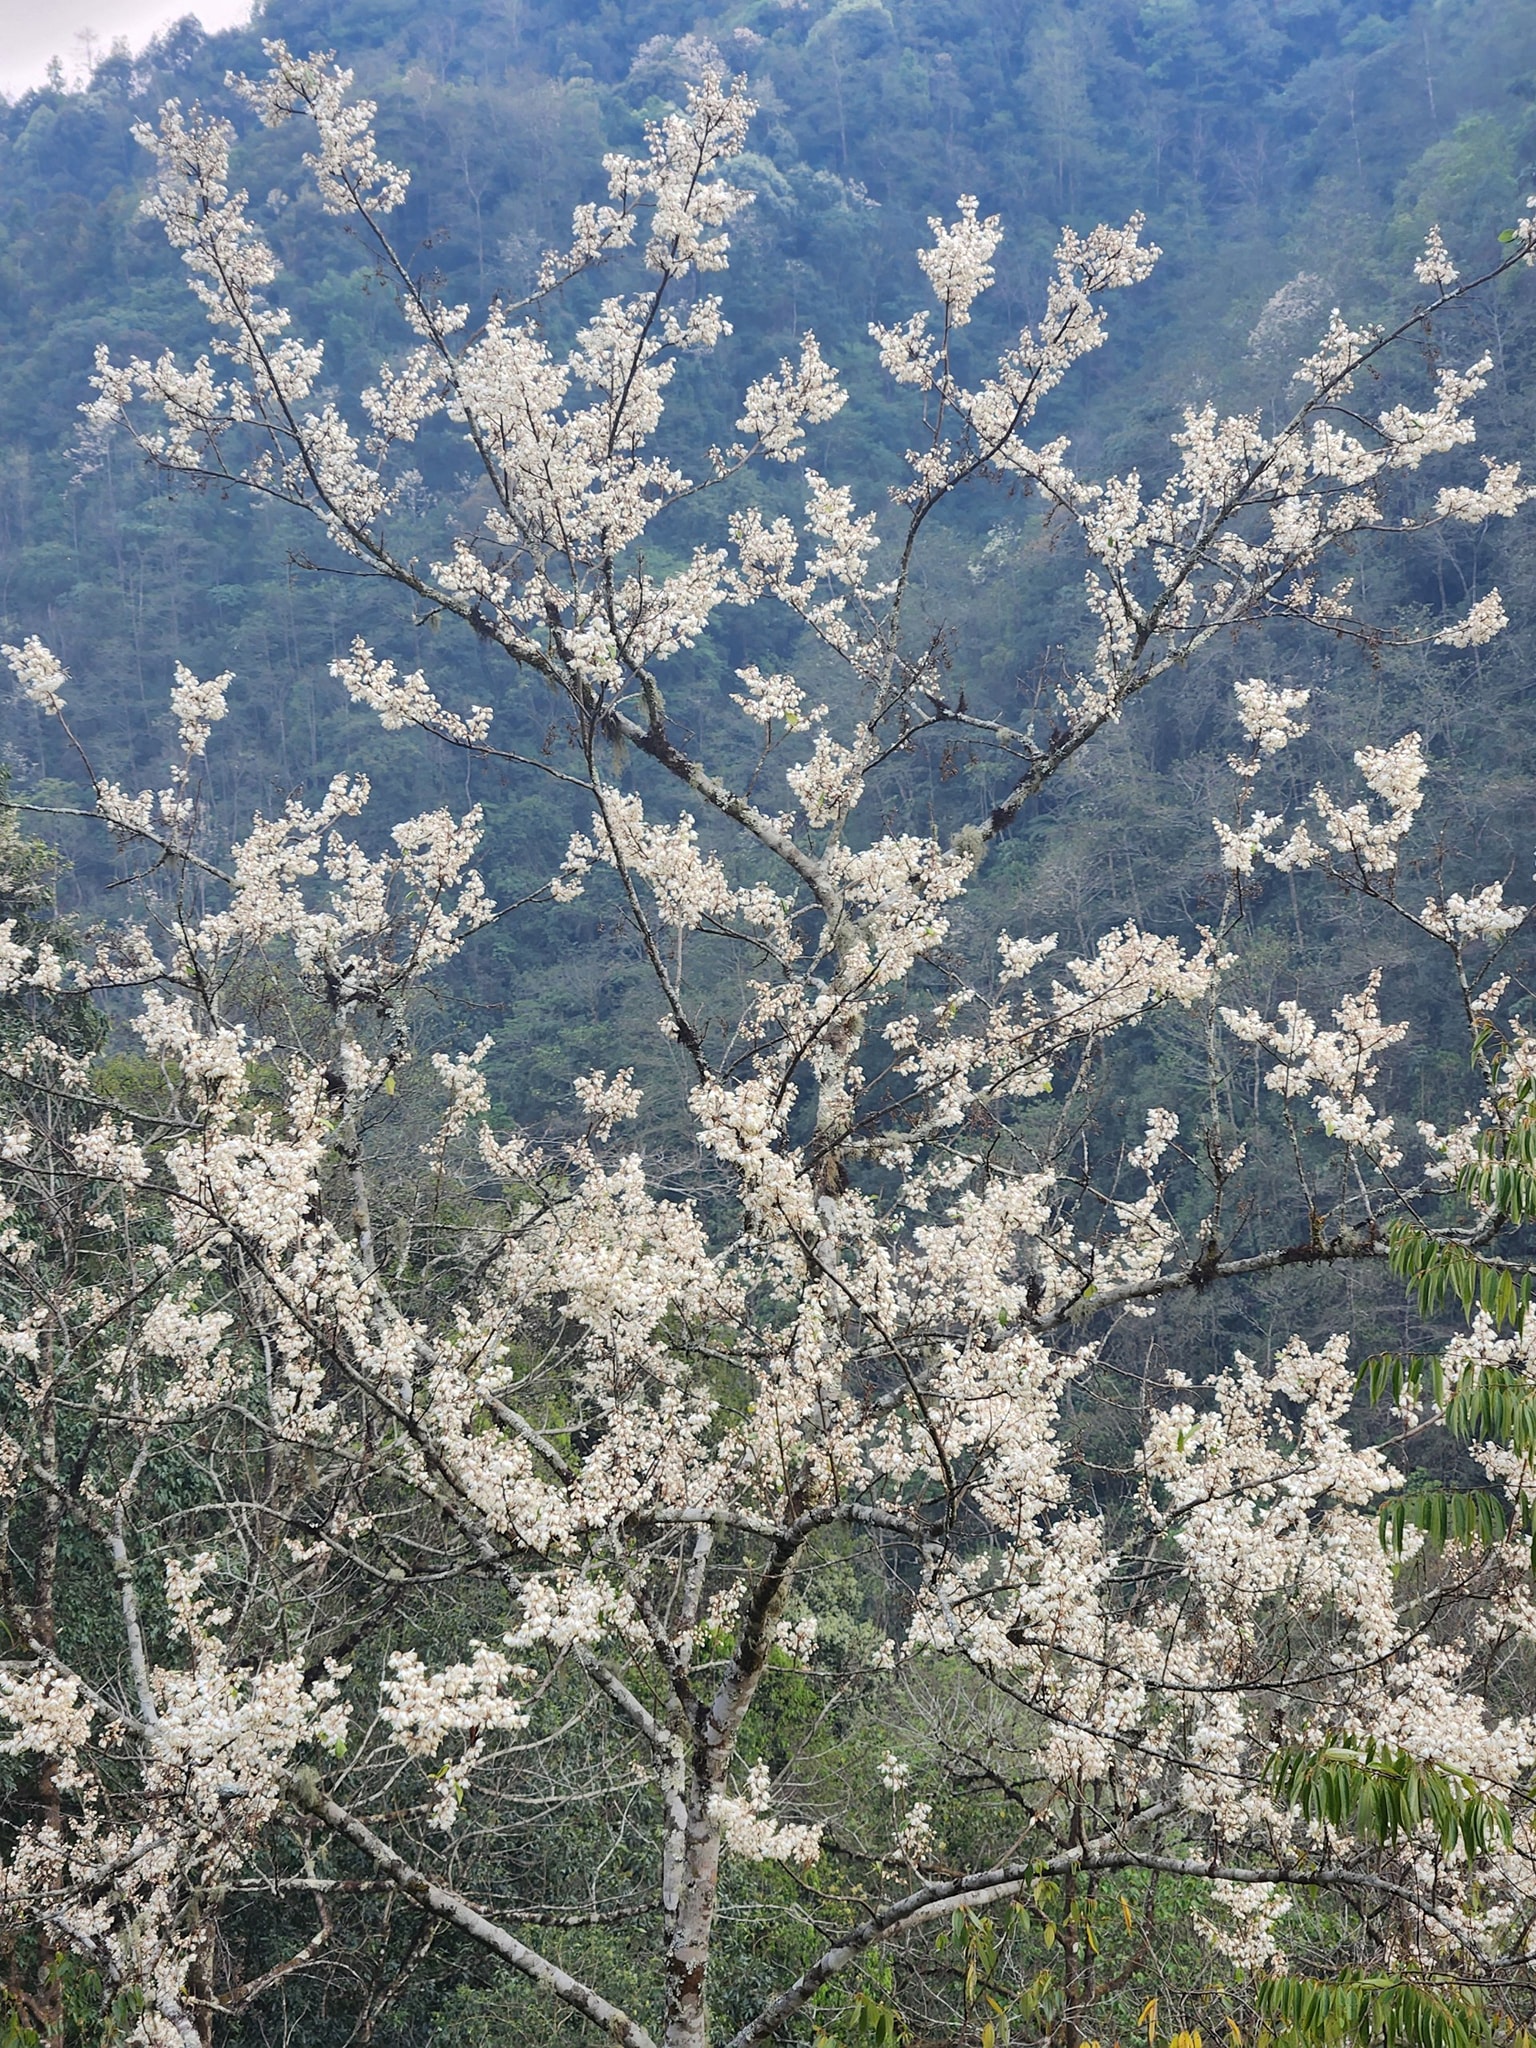 Núi Pusilung có rất nhiều cây hoa trắng muốt cả cây.jpg